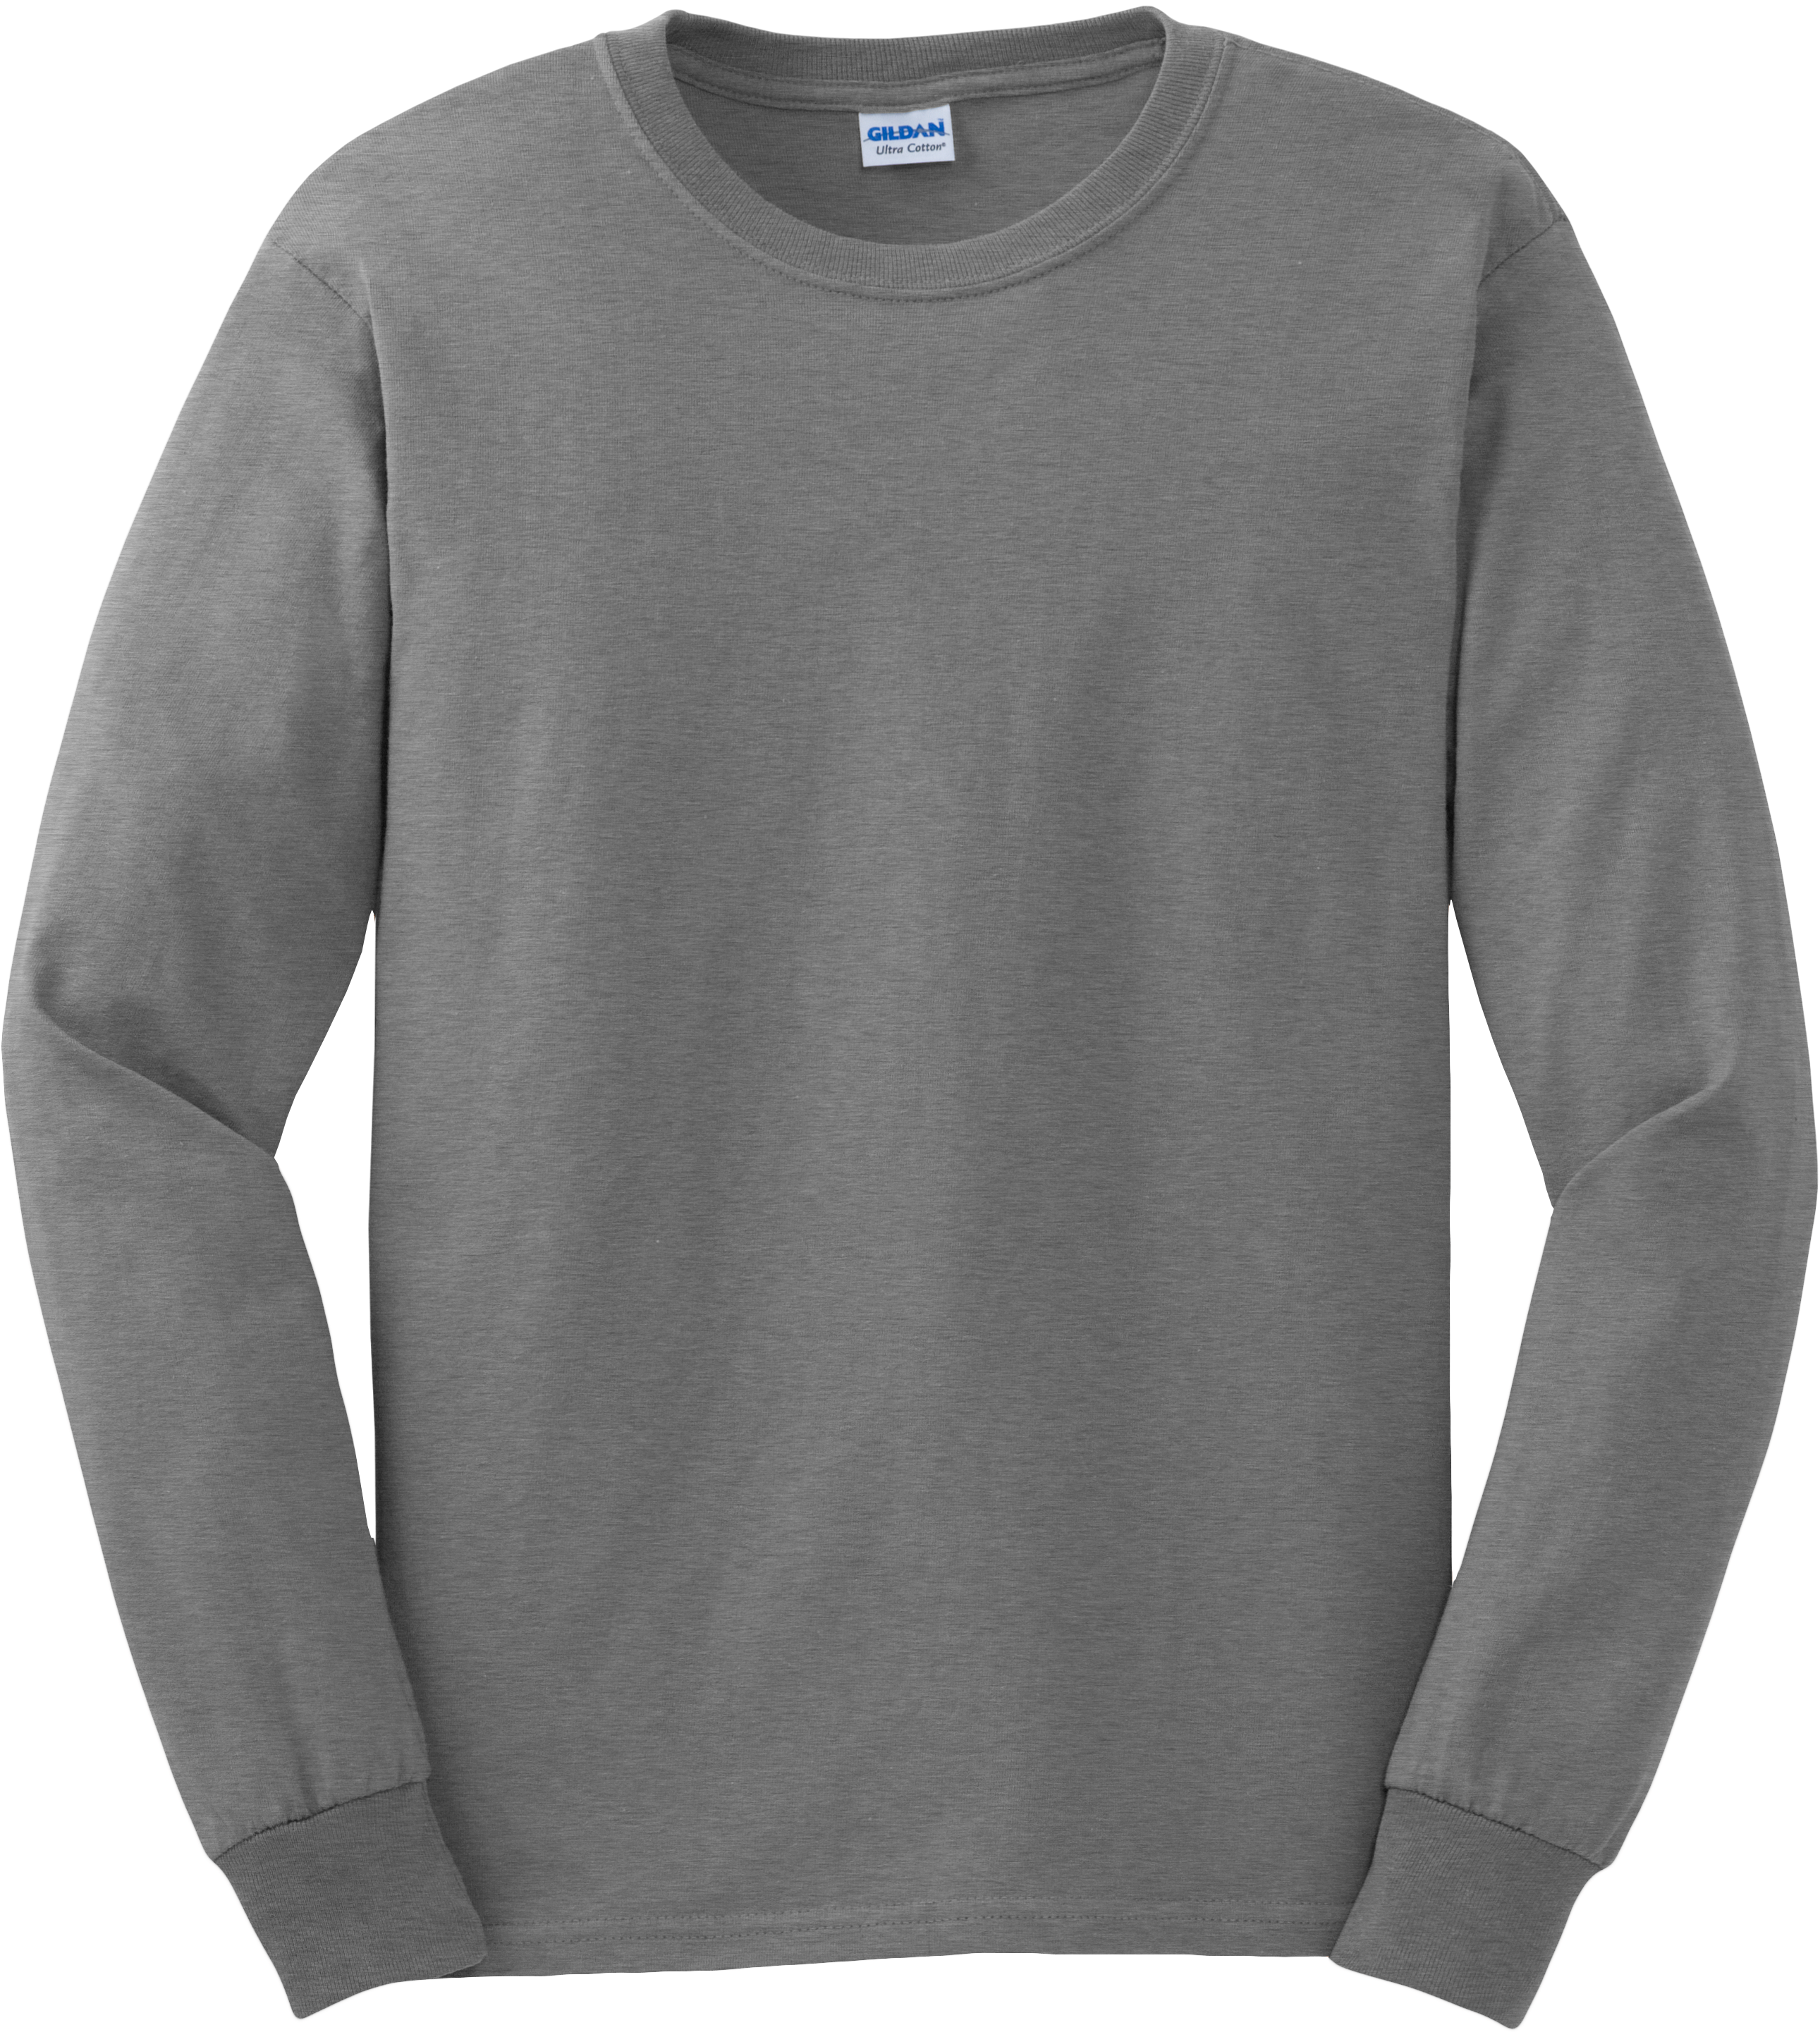 Gray Crewneck Sweatshirt Mockup